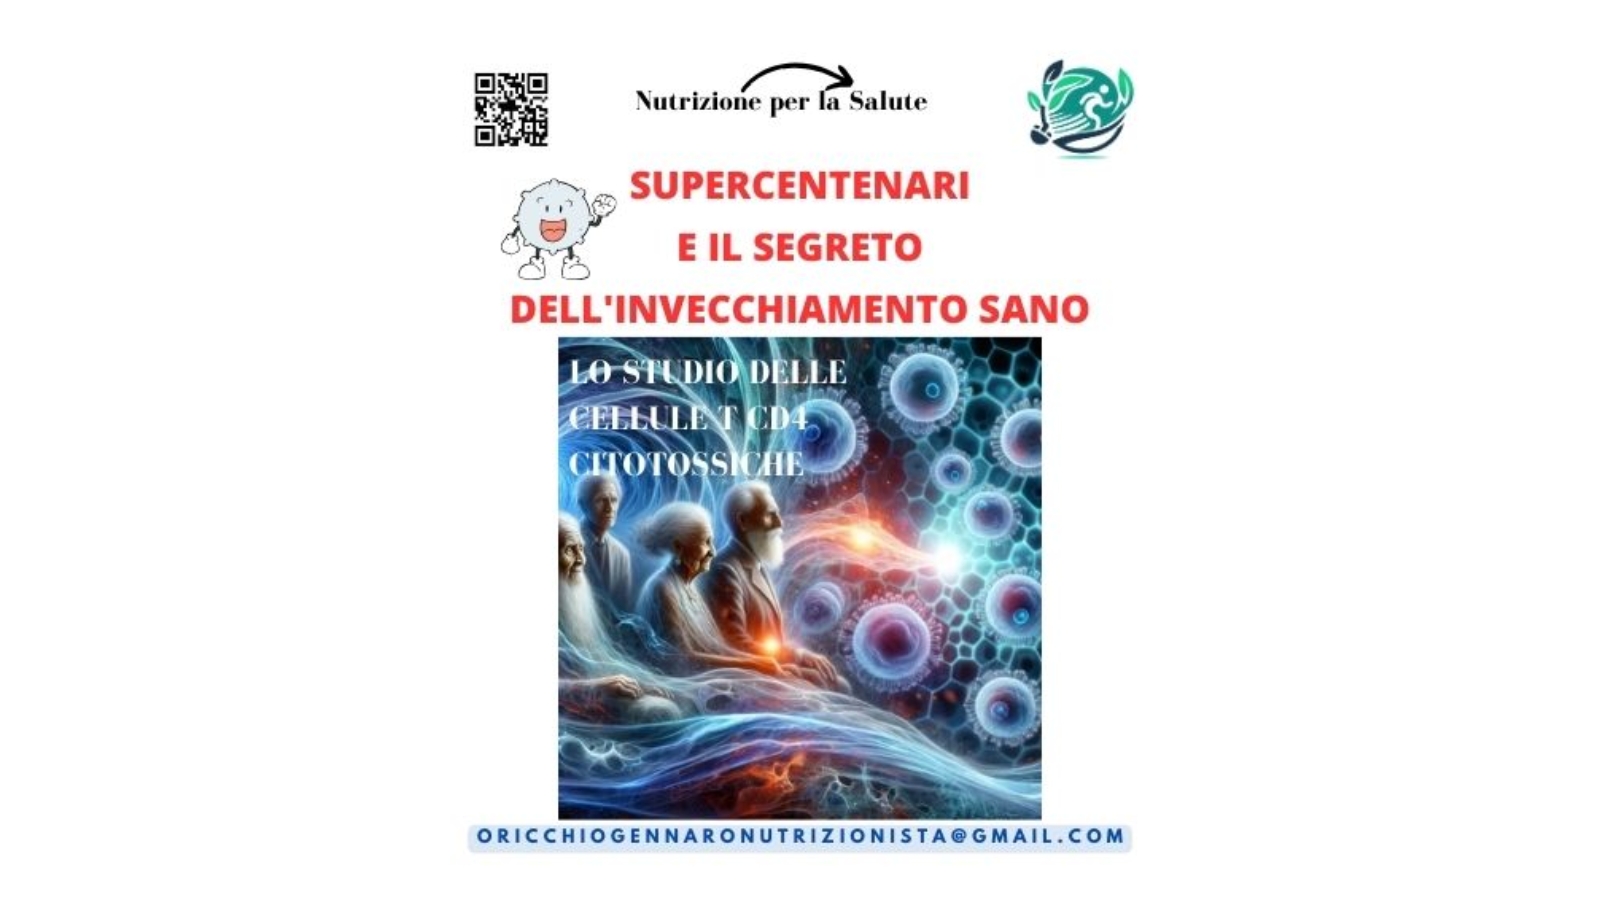 SUPERCENTENARI E IL SEGRETO DELL'INVECCHIAMENTO SANO: LO STUDIO DELLE CELLULE T CD4 CITOTOSSICHE